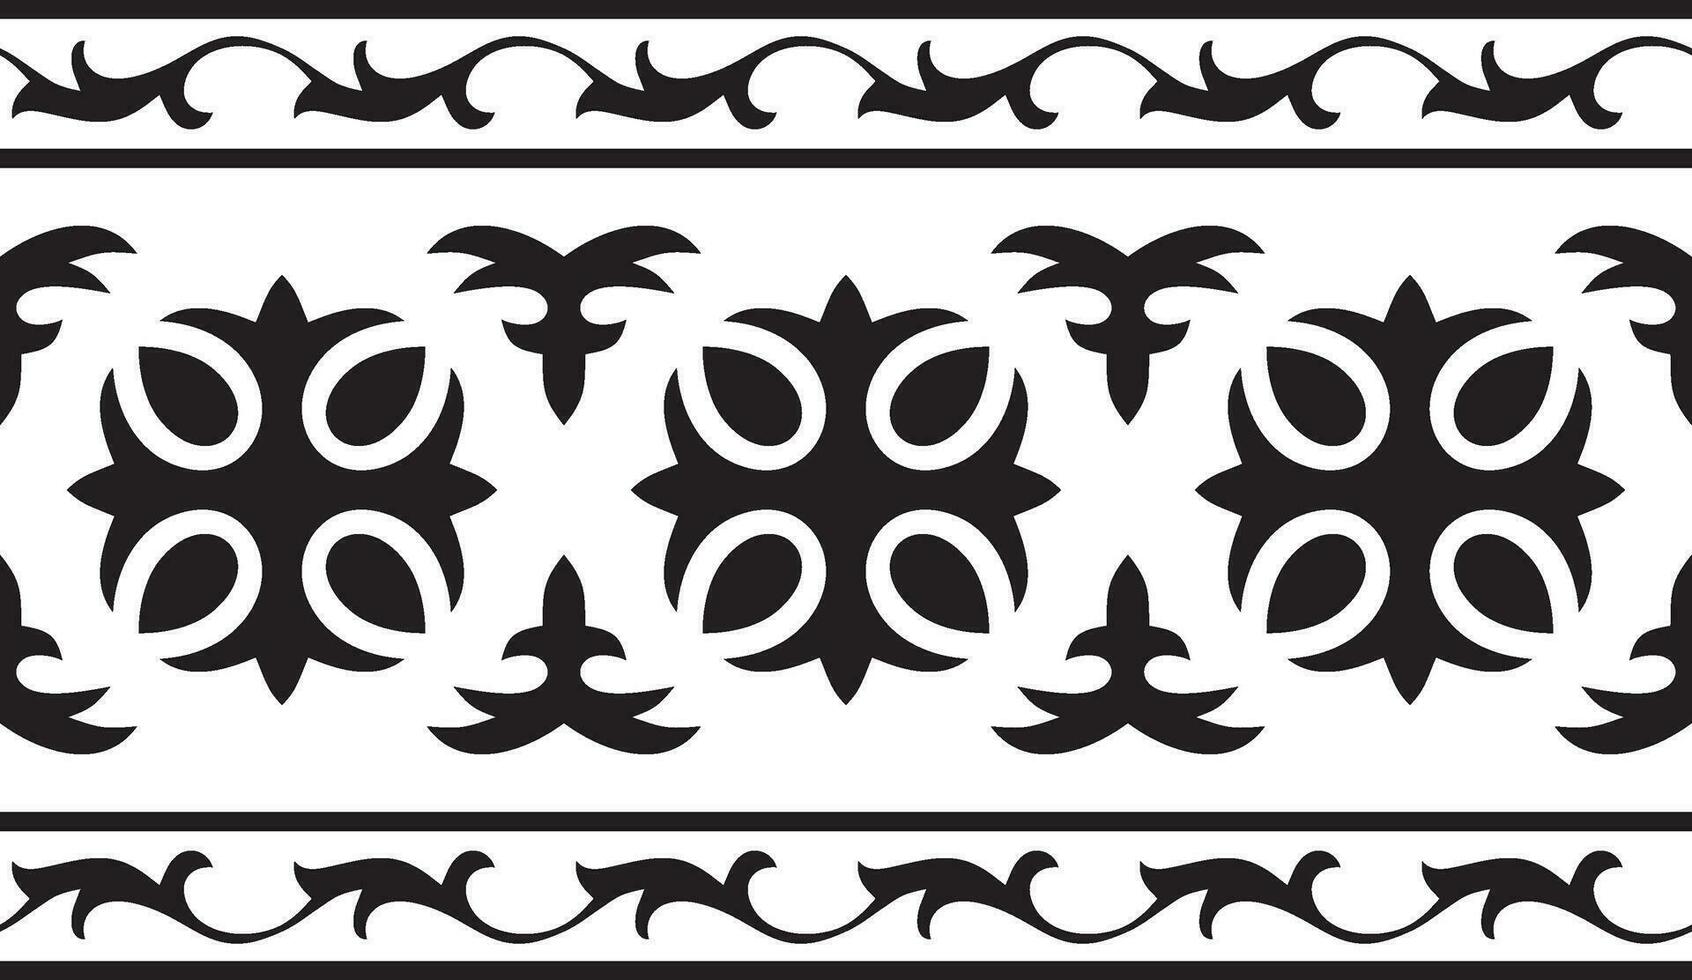 Vektor schwarz einfarbig nahtlos kazakh National Ornament. ethnisch endlos Muster von das Völker von das großartig Steppe, .Mongolen, Kirgisen, Kalmücken, Burjaten. Rahmen Rand